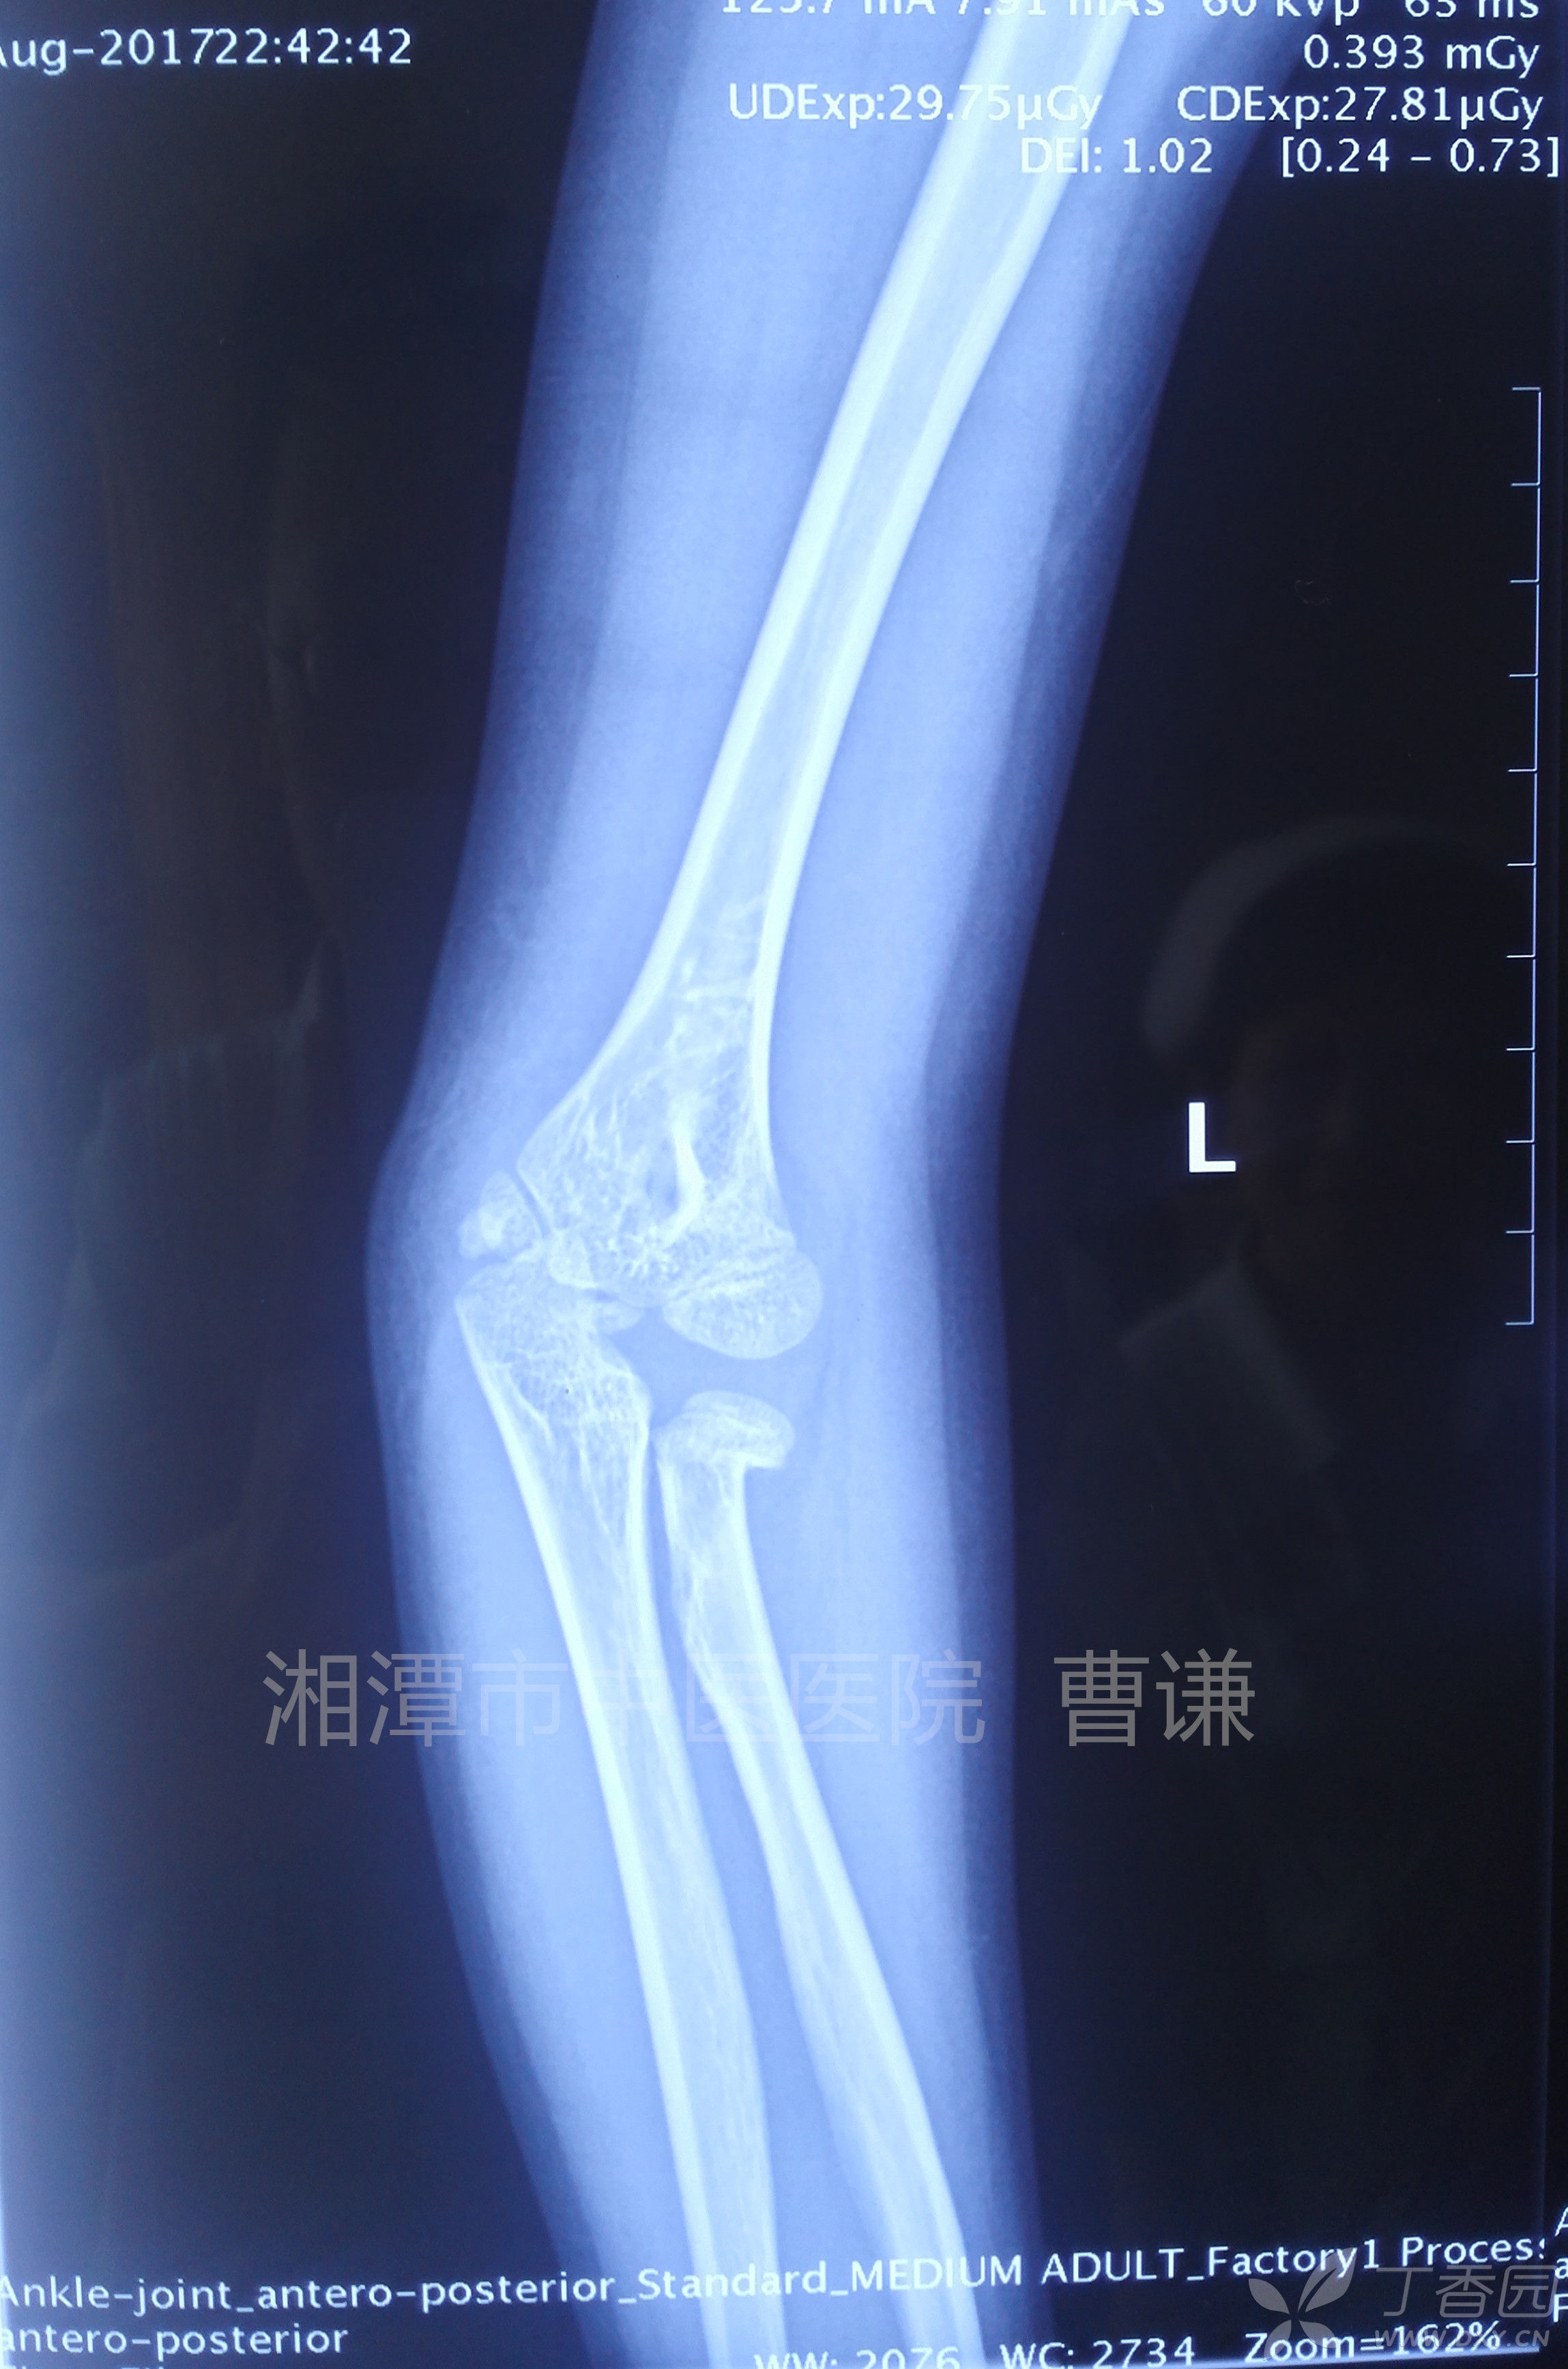 简要病史:患者滑冰时跌倒致左肘部肿痛,活动受限,在外院行拍片及ct